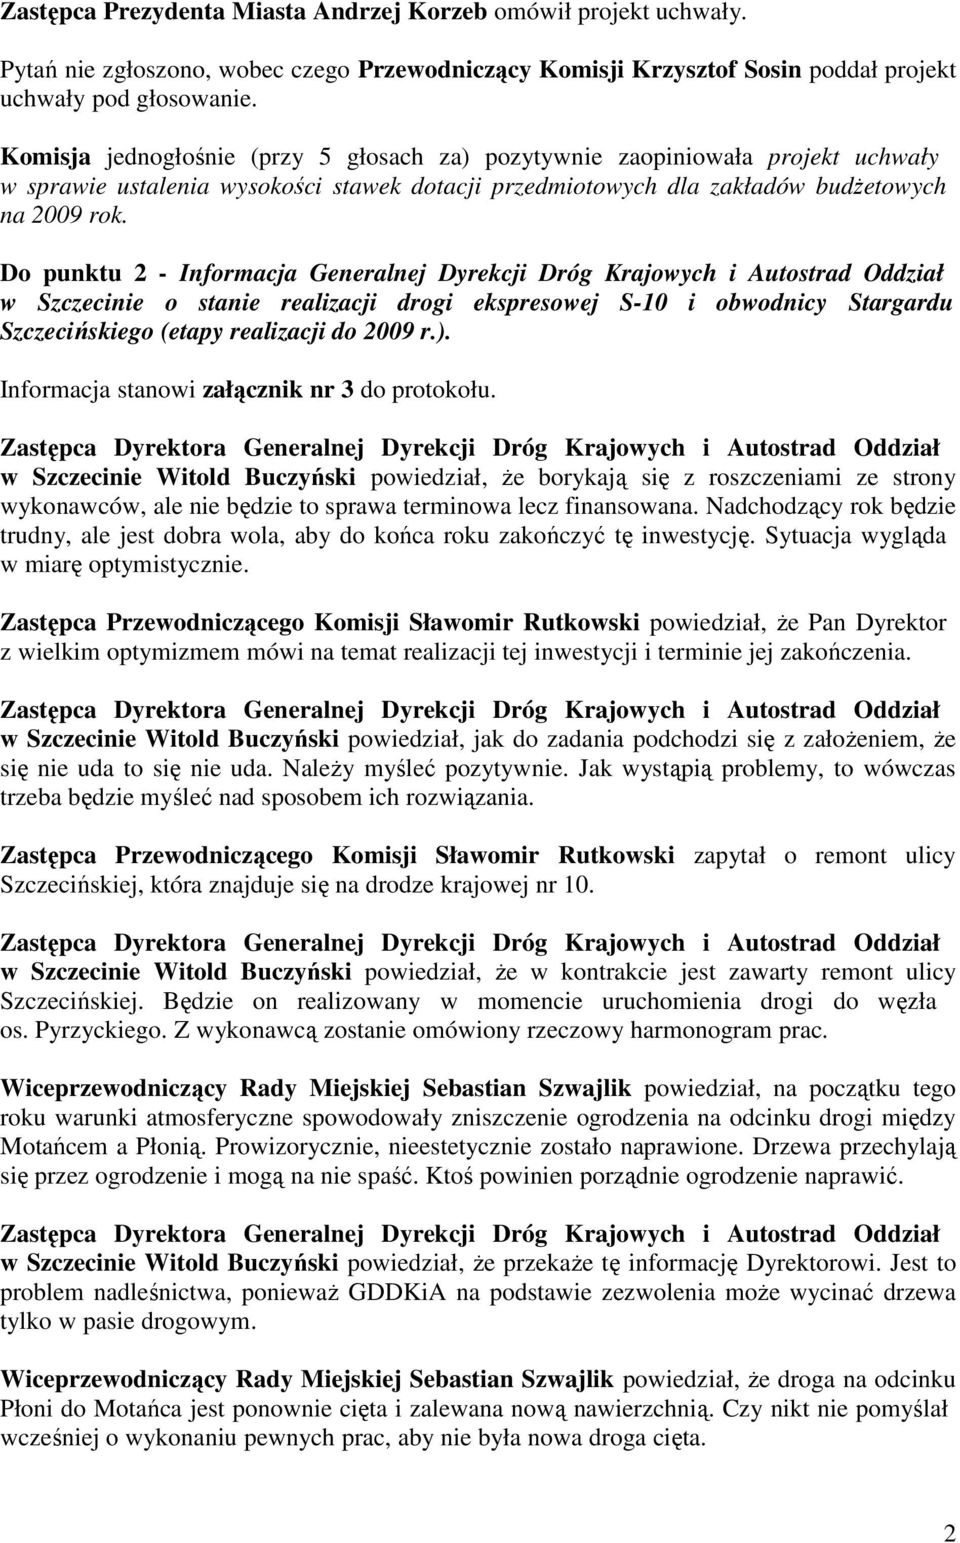 Do punktu 2 - Informacja Generalnej Dyrekcji Dróg Krajowych i Autostrad Oddział w Szczecinie o stanie realizacji drogi ekspresowej S-10 i obwodnicy Stargardu Szczecińskiego (etapy realizacji do 2009